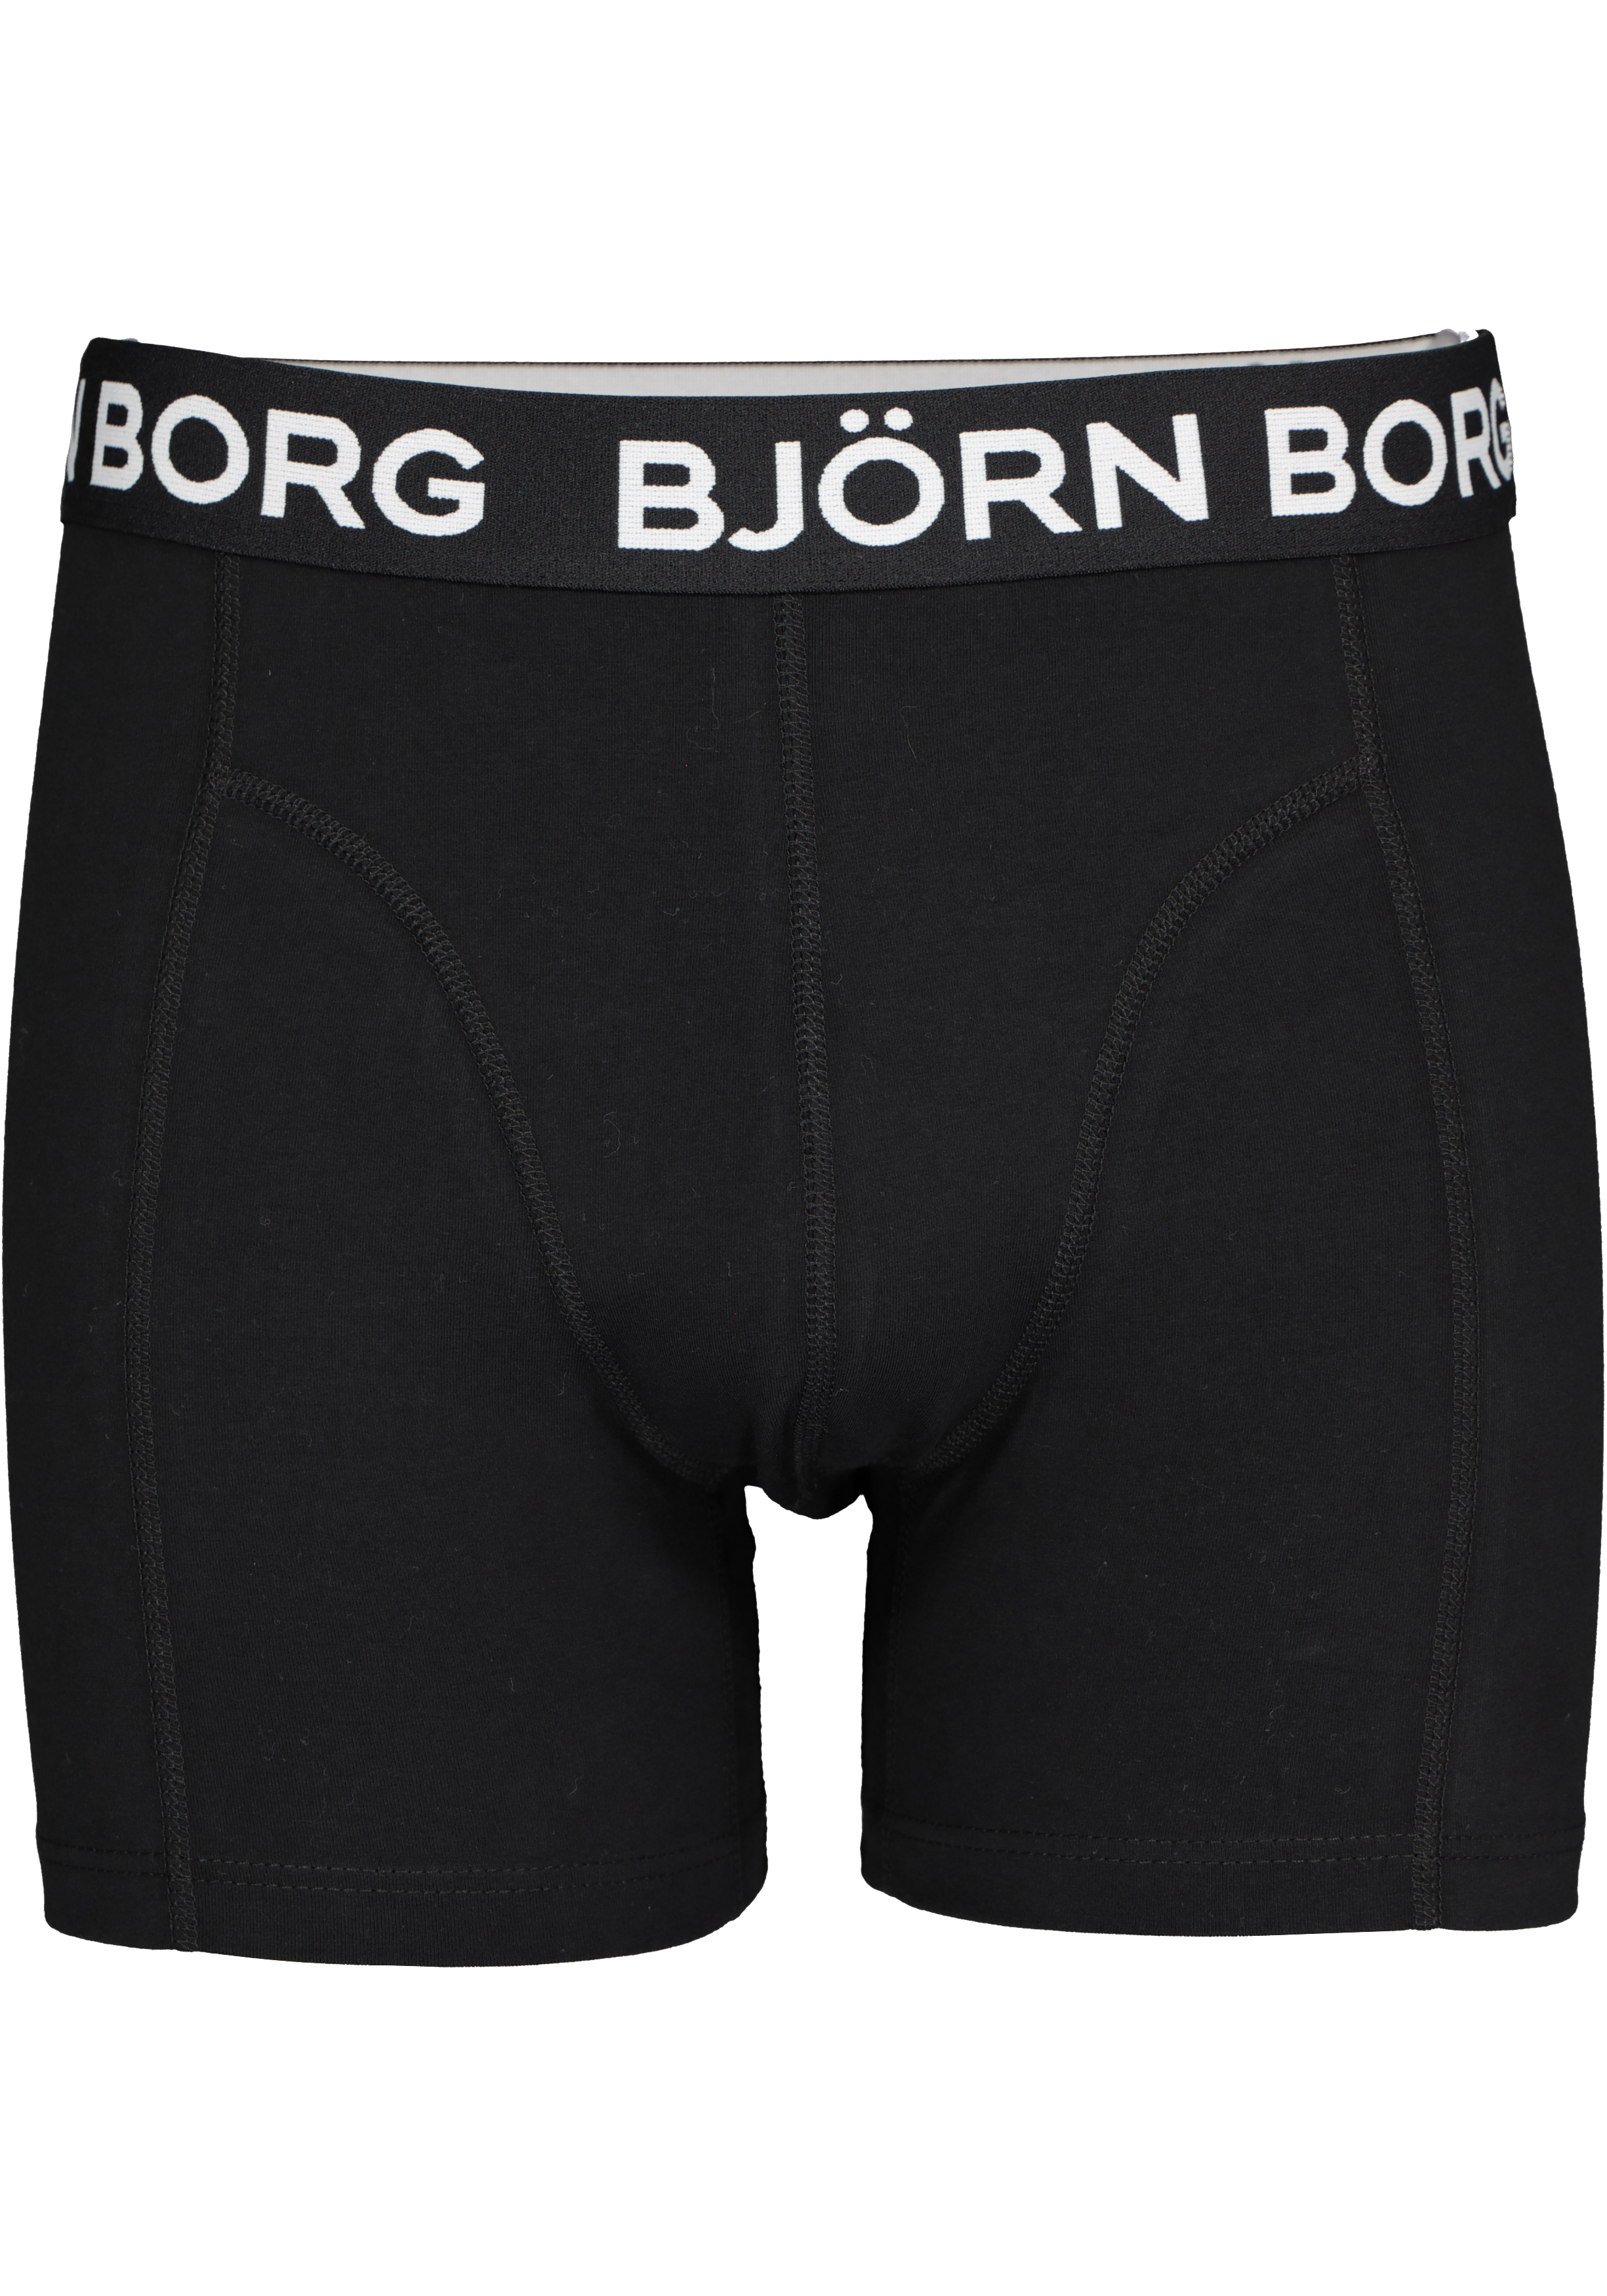 aardolie Ga naar het circuit ik heb nodig Bjorn Borg boxershorts Core (2-pack), heren boxers normale lengte, zwart -  Zomer SALE tot 50% korting